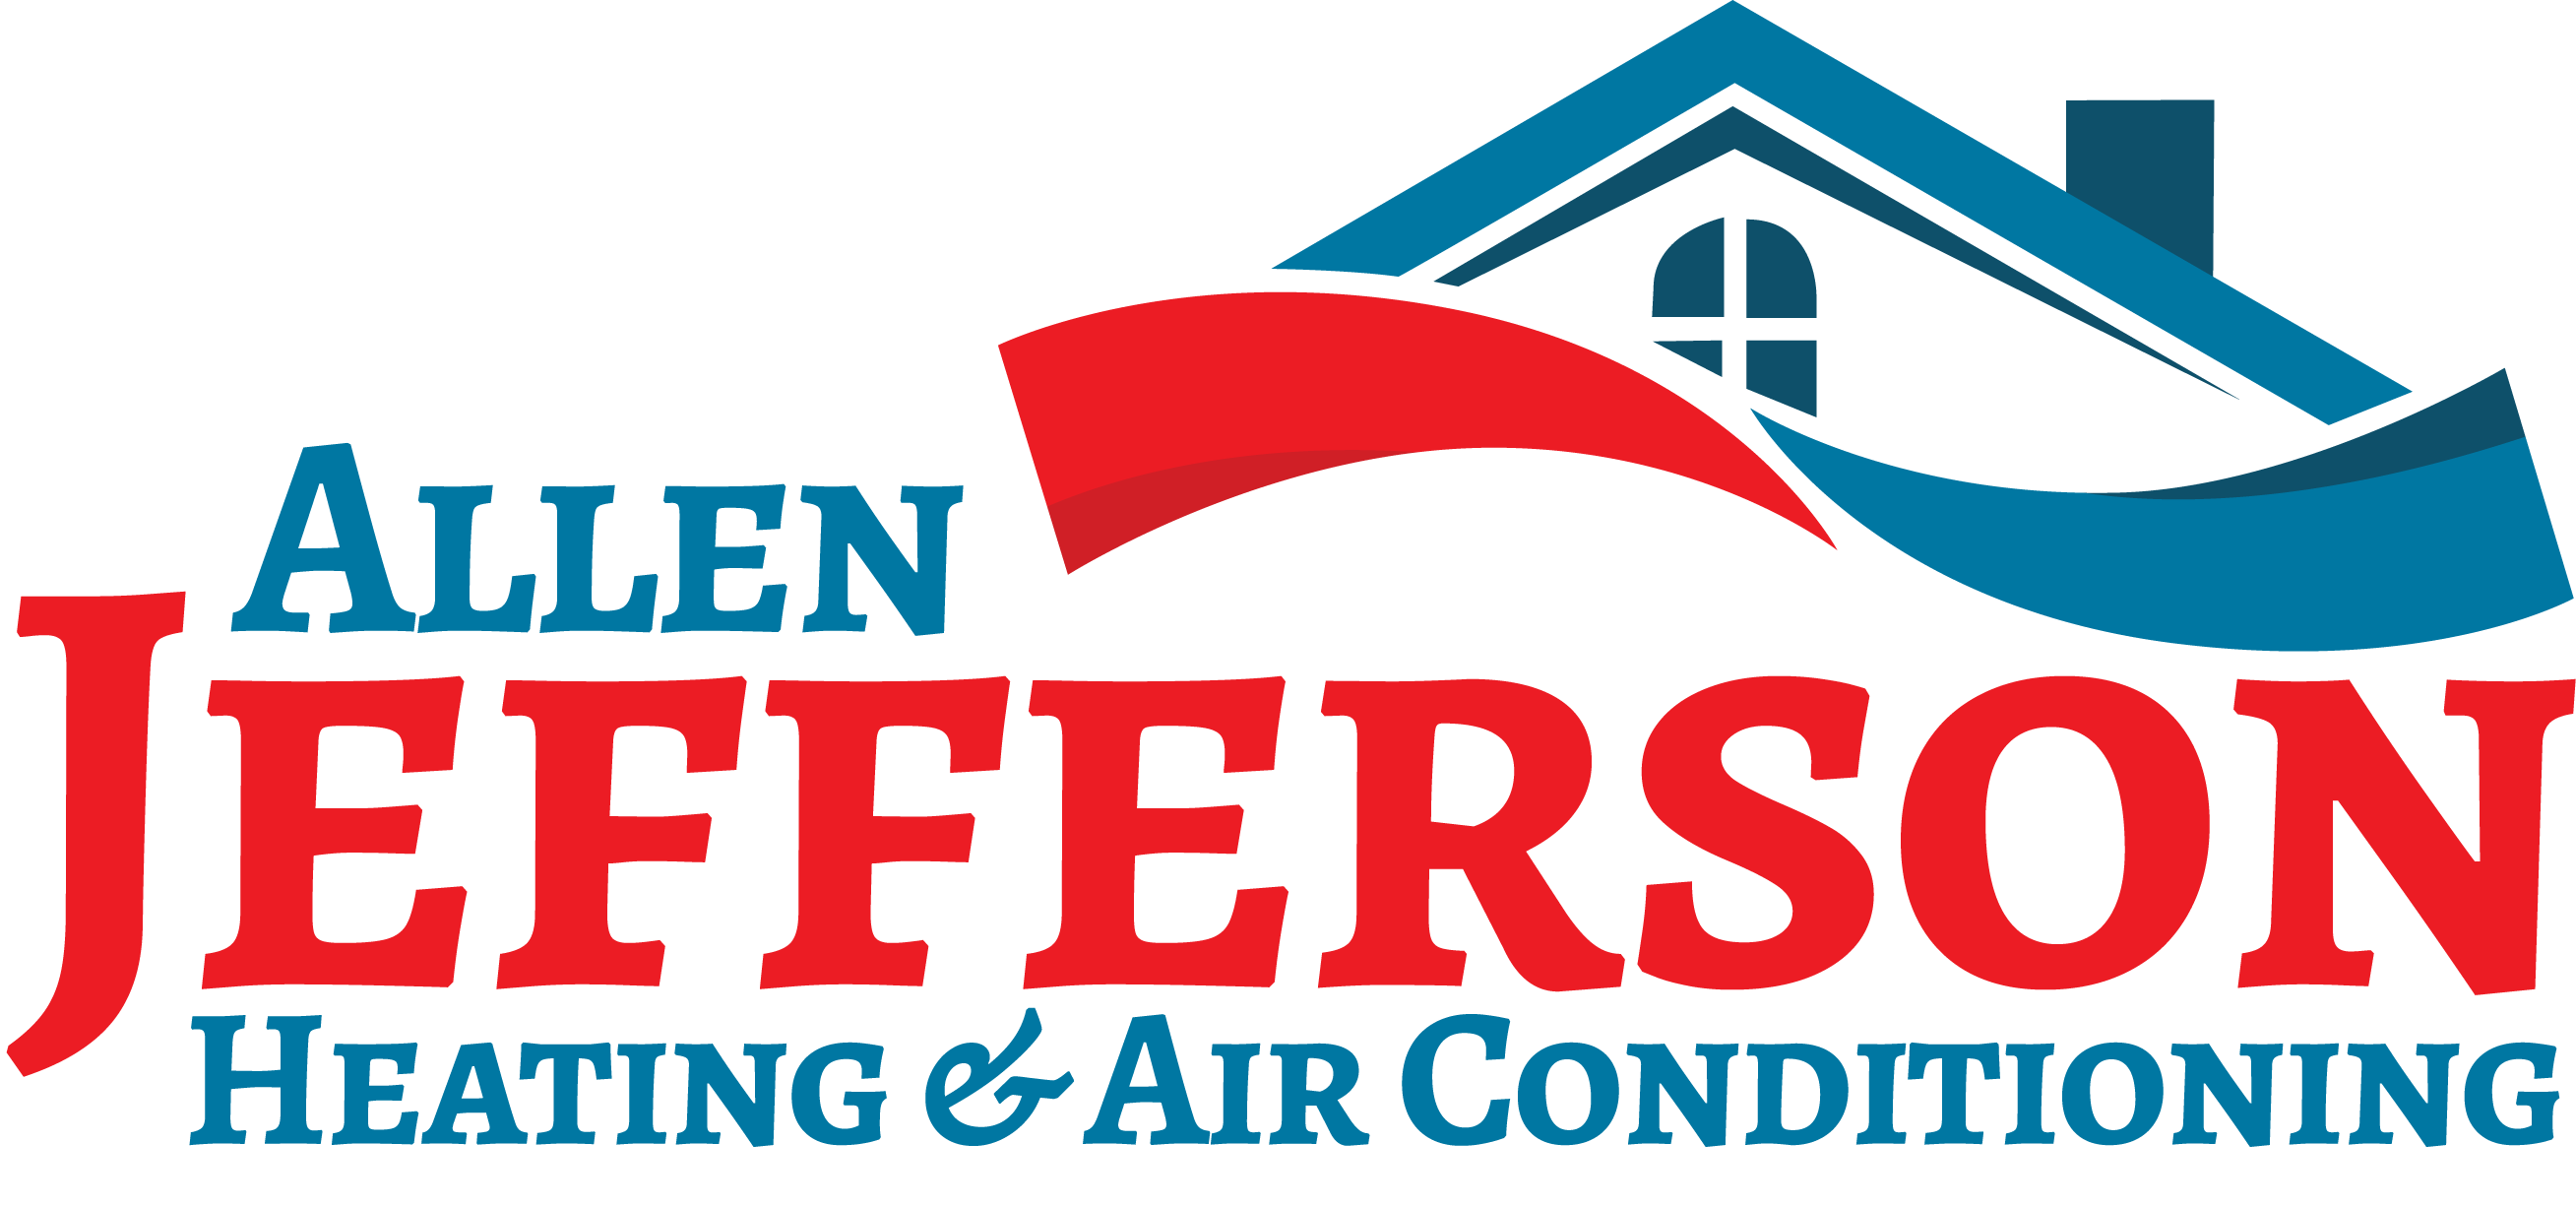 Allen Jefferson Heating & Air Conditioning Logo